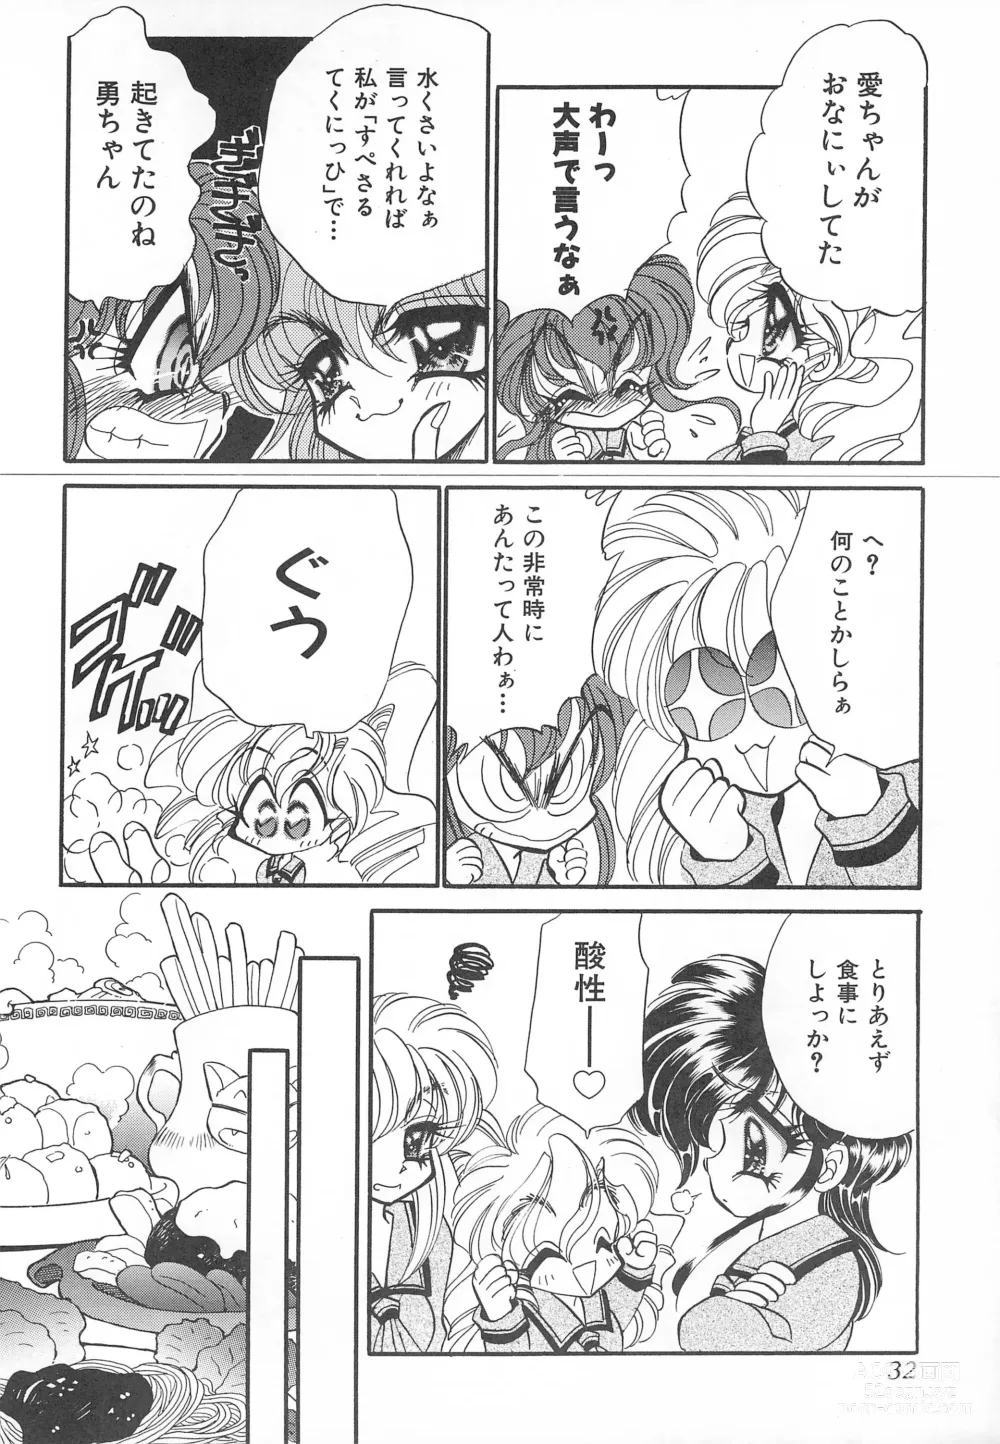 Page 32 of doujinshi MAX 6